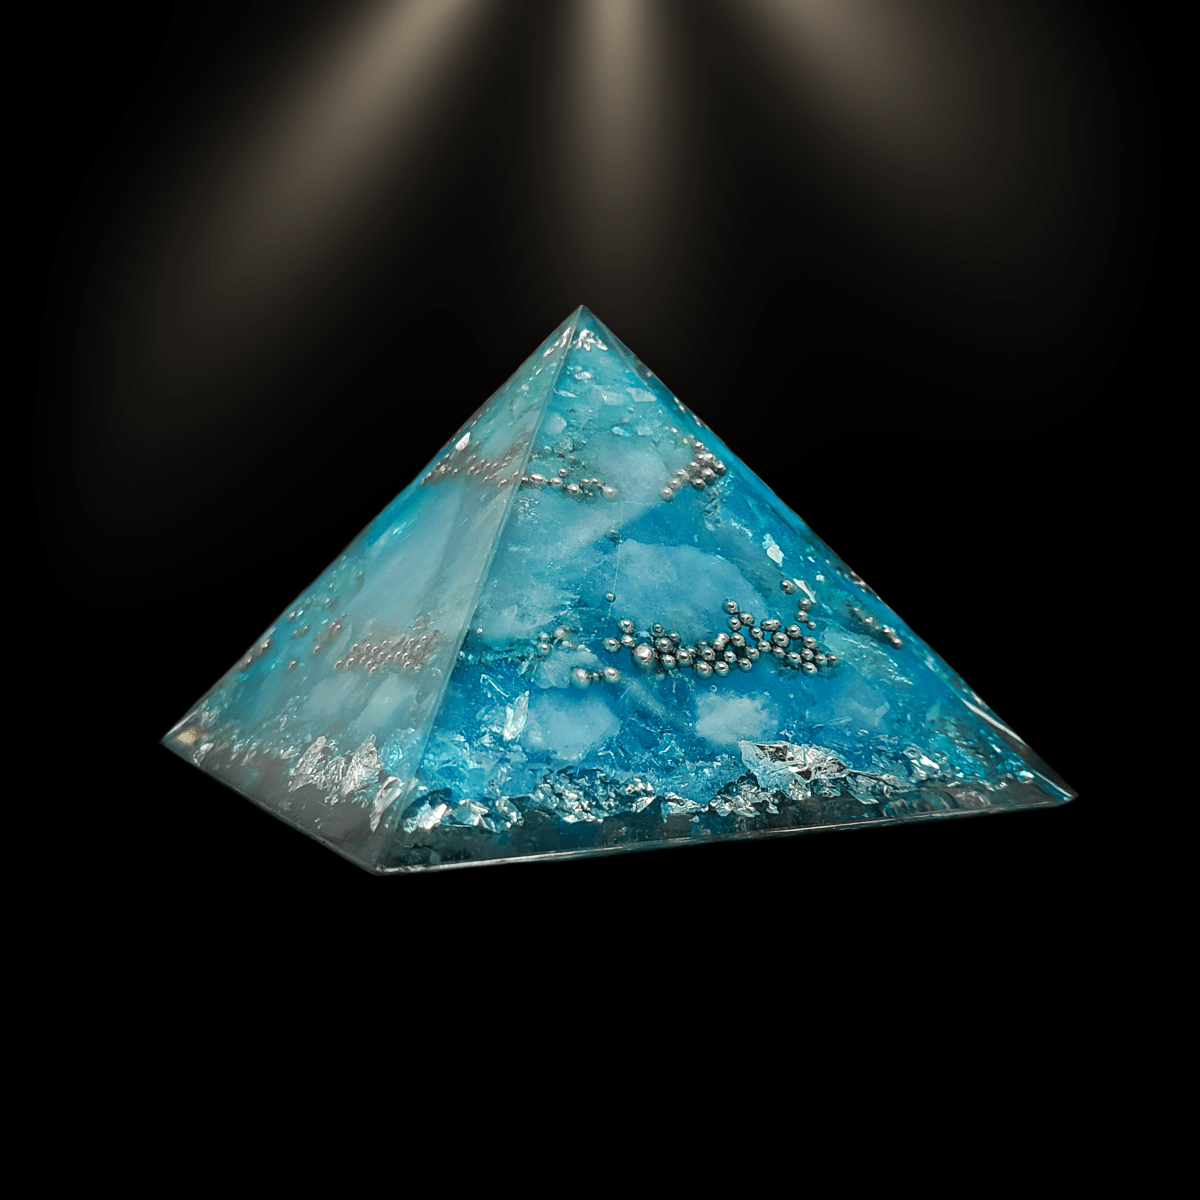 Hellblaue Orgon Pyramide mit silbernen Elementen. Die helle Farbgebung gab dieser Orgonit Pyramide ihren Namen.